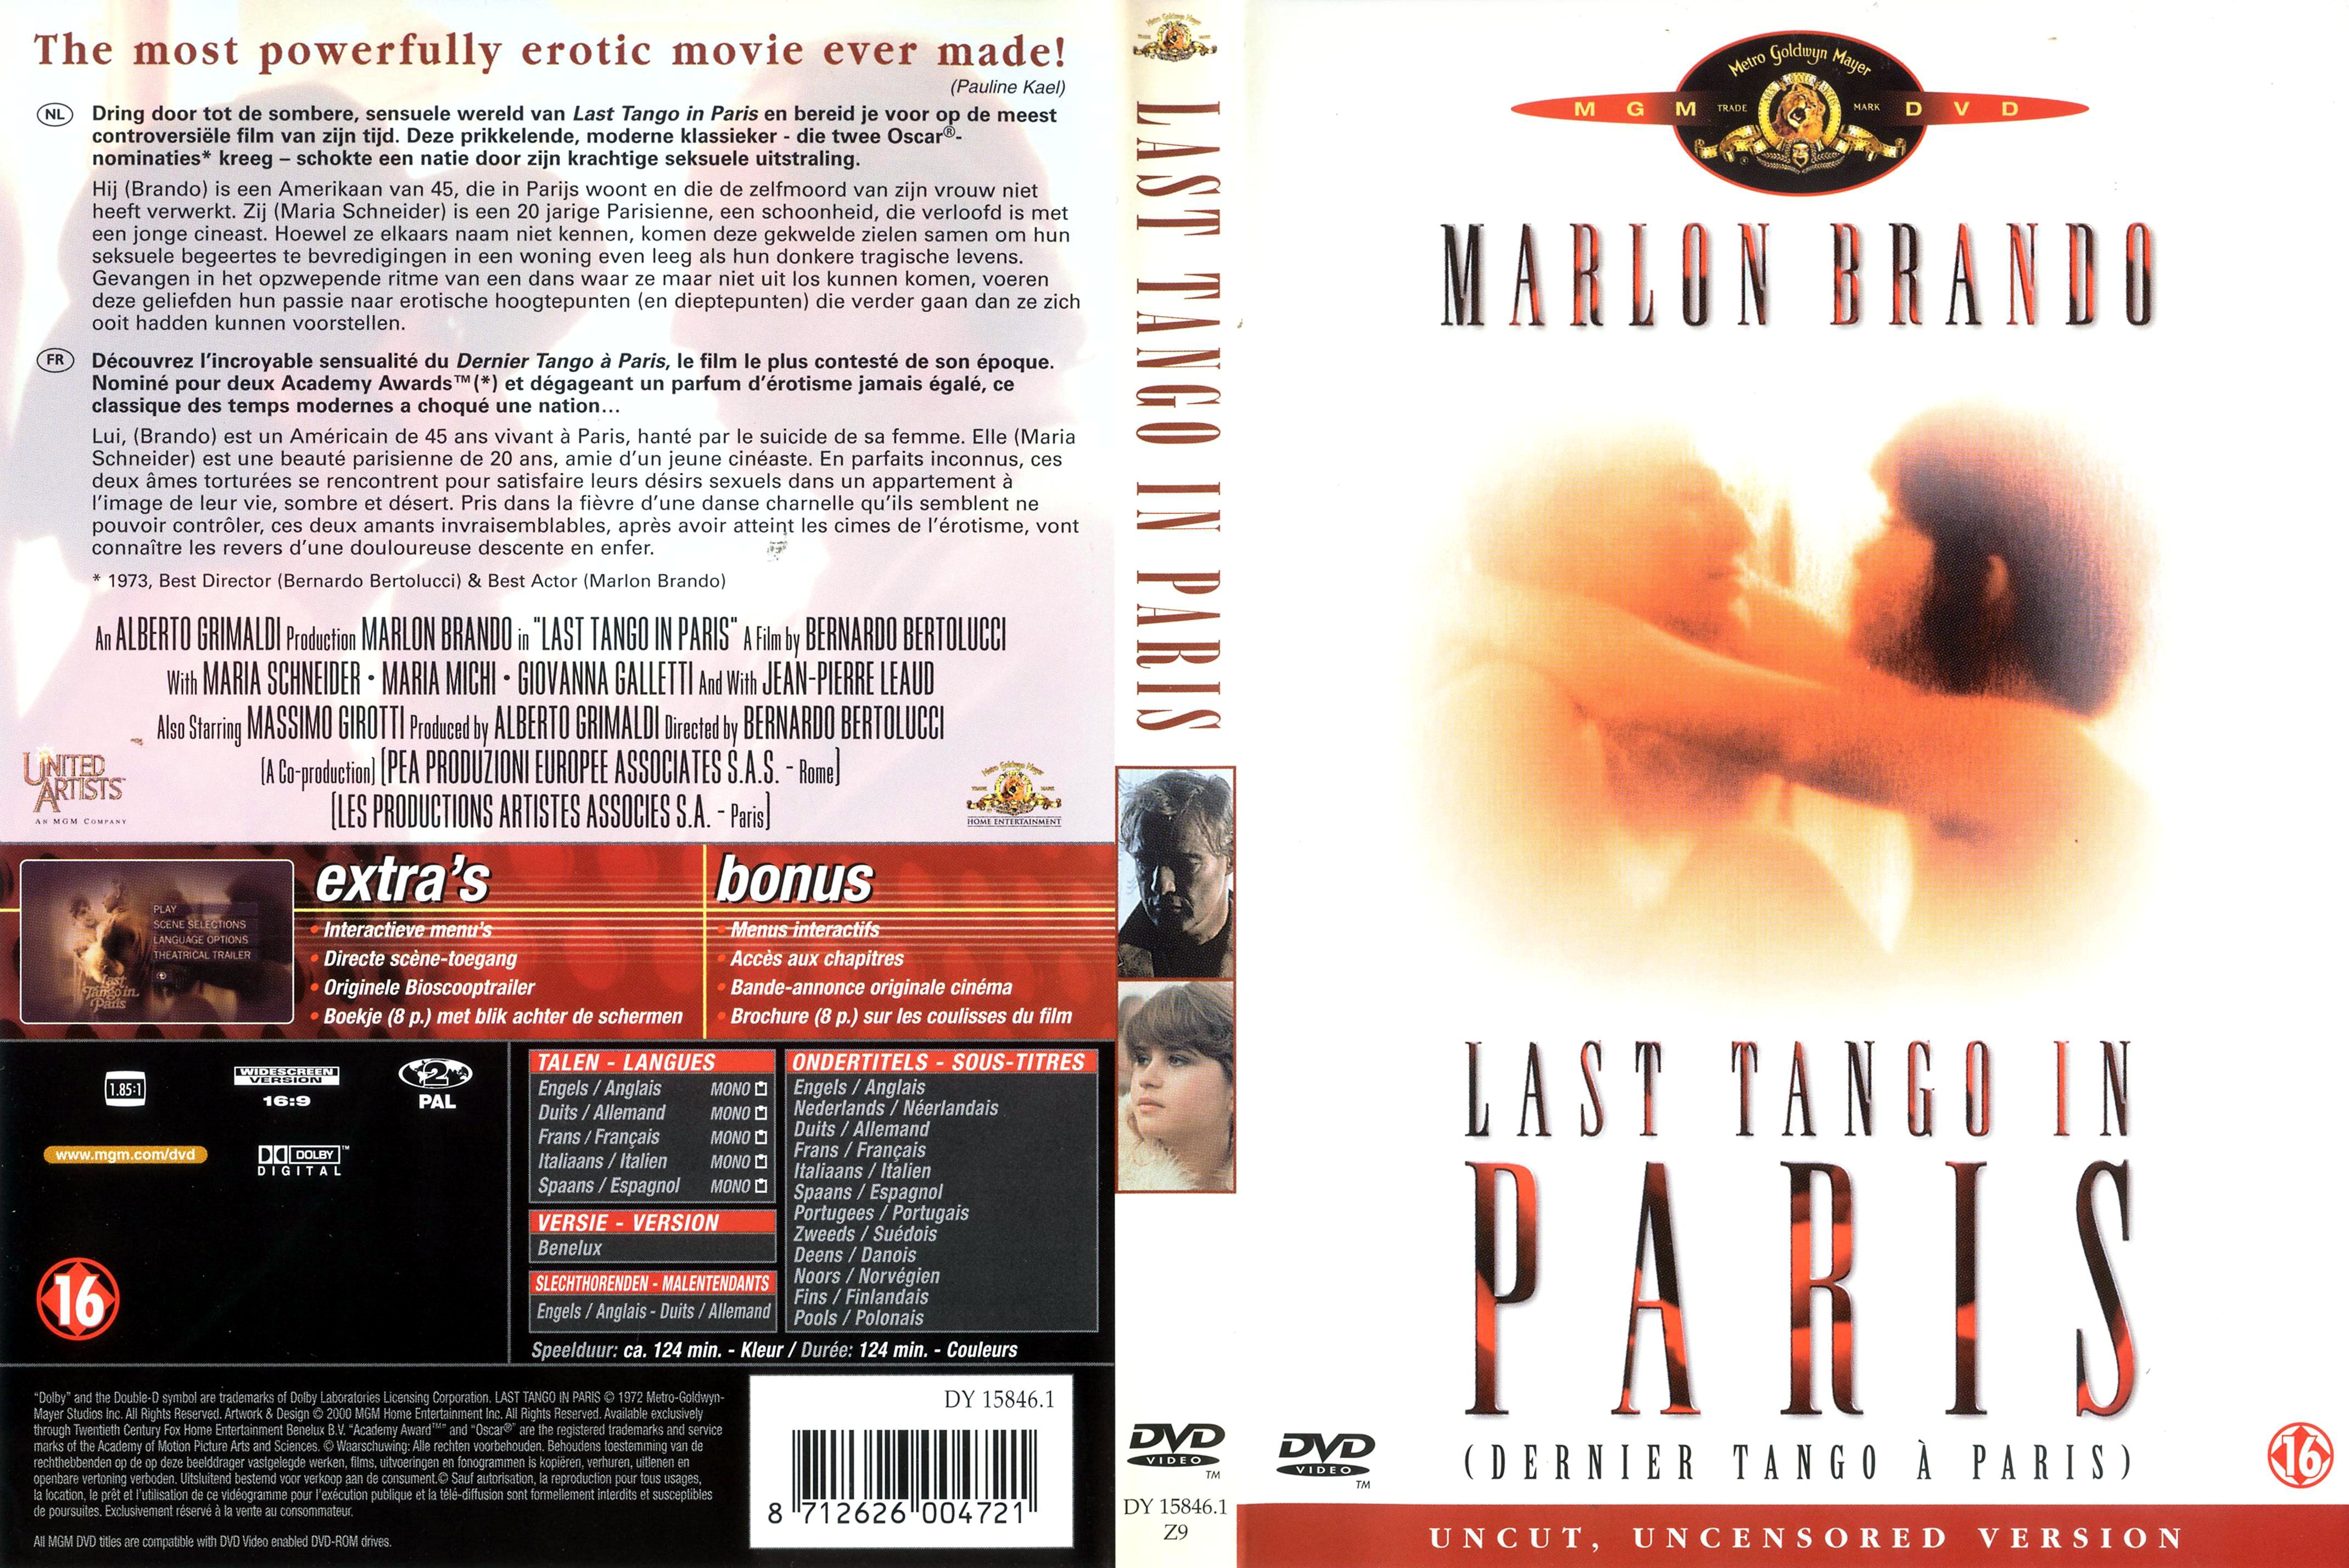 Jaquette DVD Le dernier tango  Paris